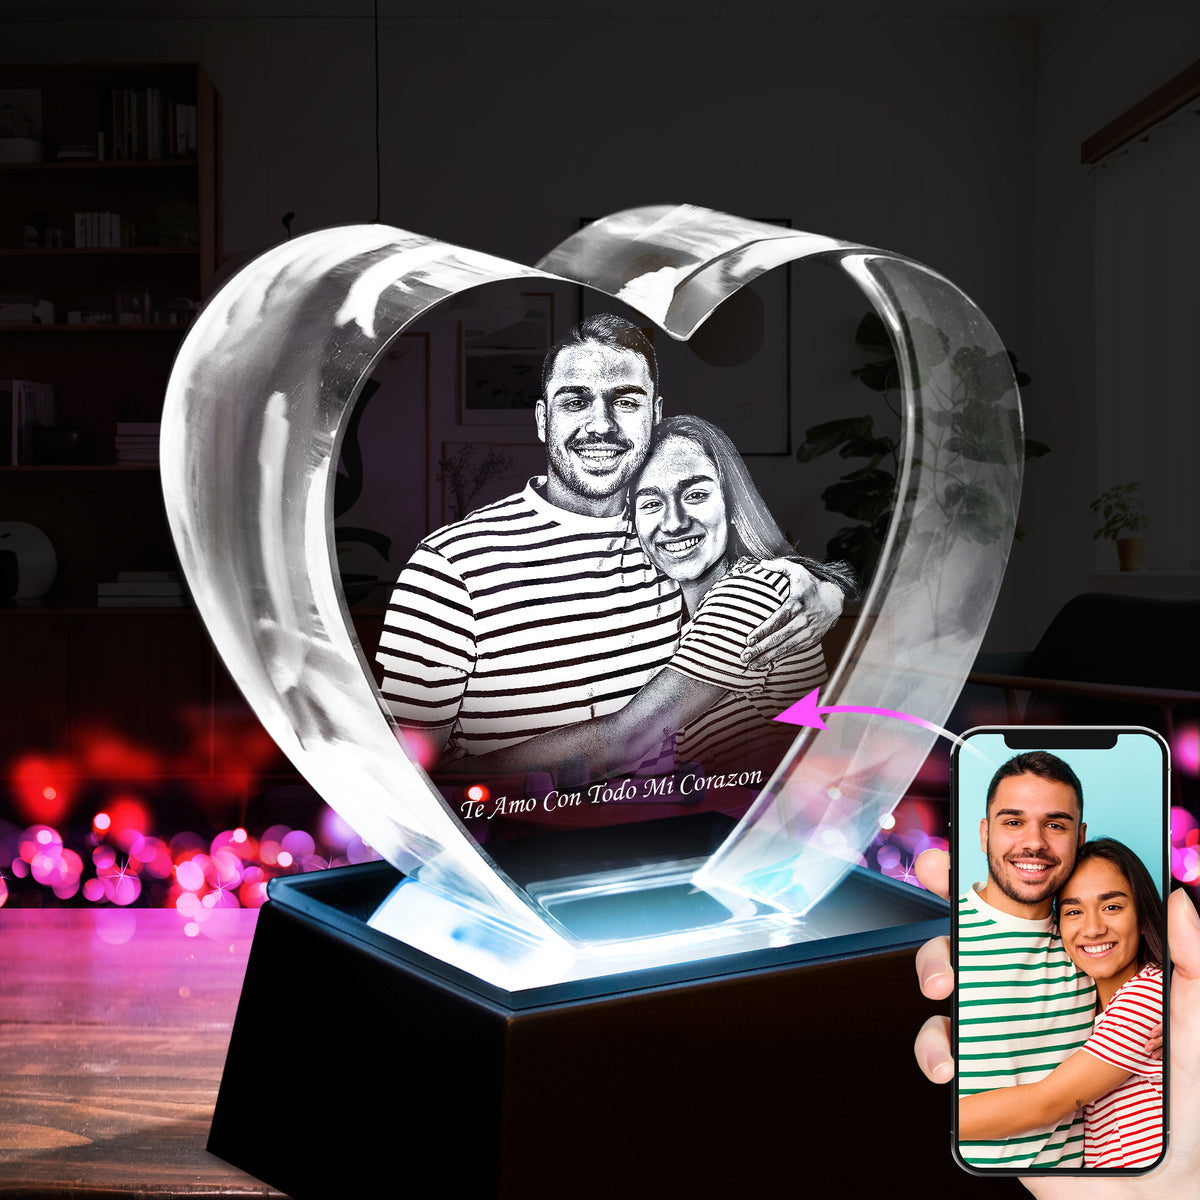 3D Crystal Heart